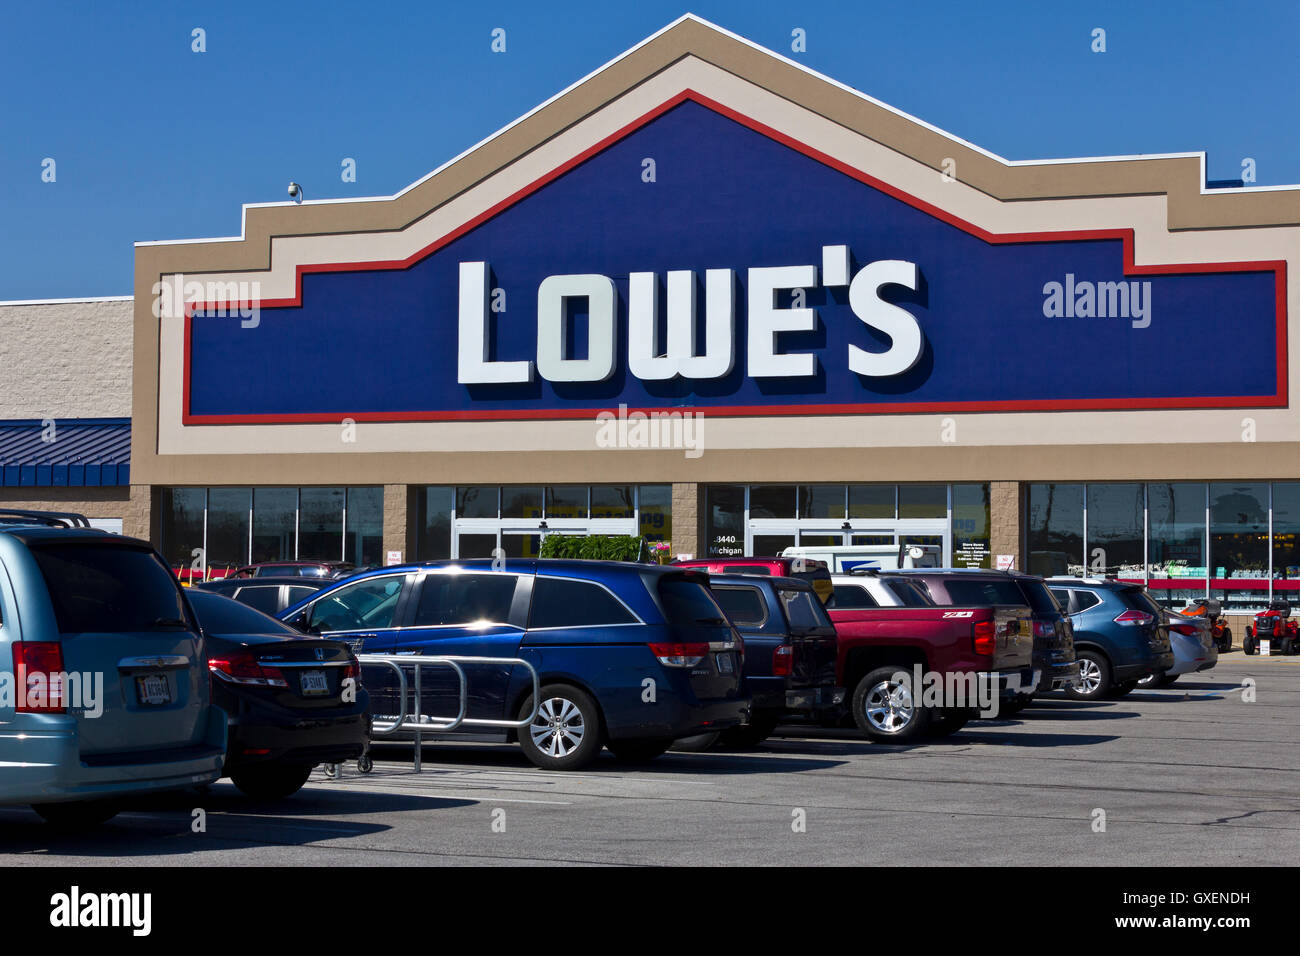 Indianapolis - Circa Abril 2016: Lowe's Home Improvement Warehouse. Lowe's ayuda a los clientes a mejorar los lugares en los que llamar hogar III Foto de stock